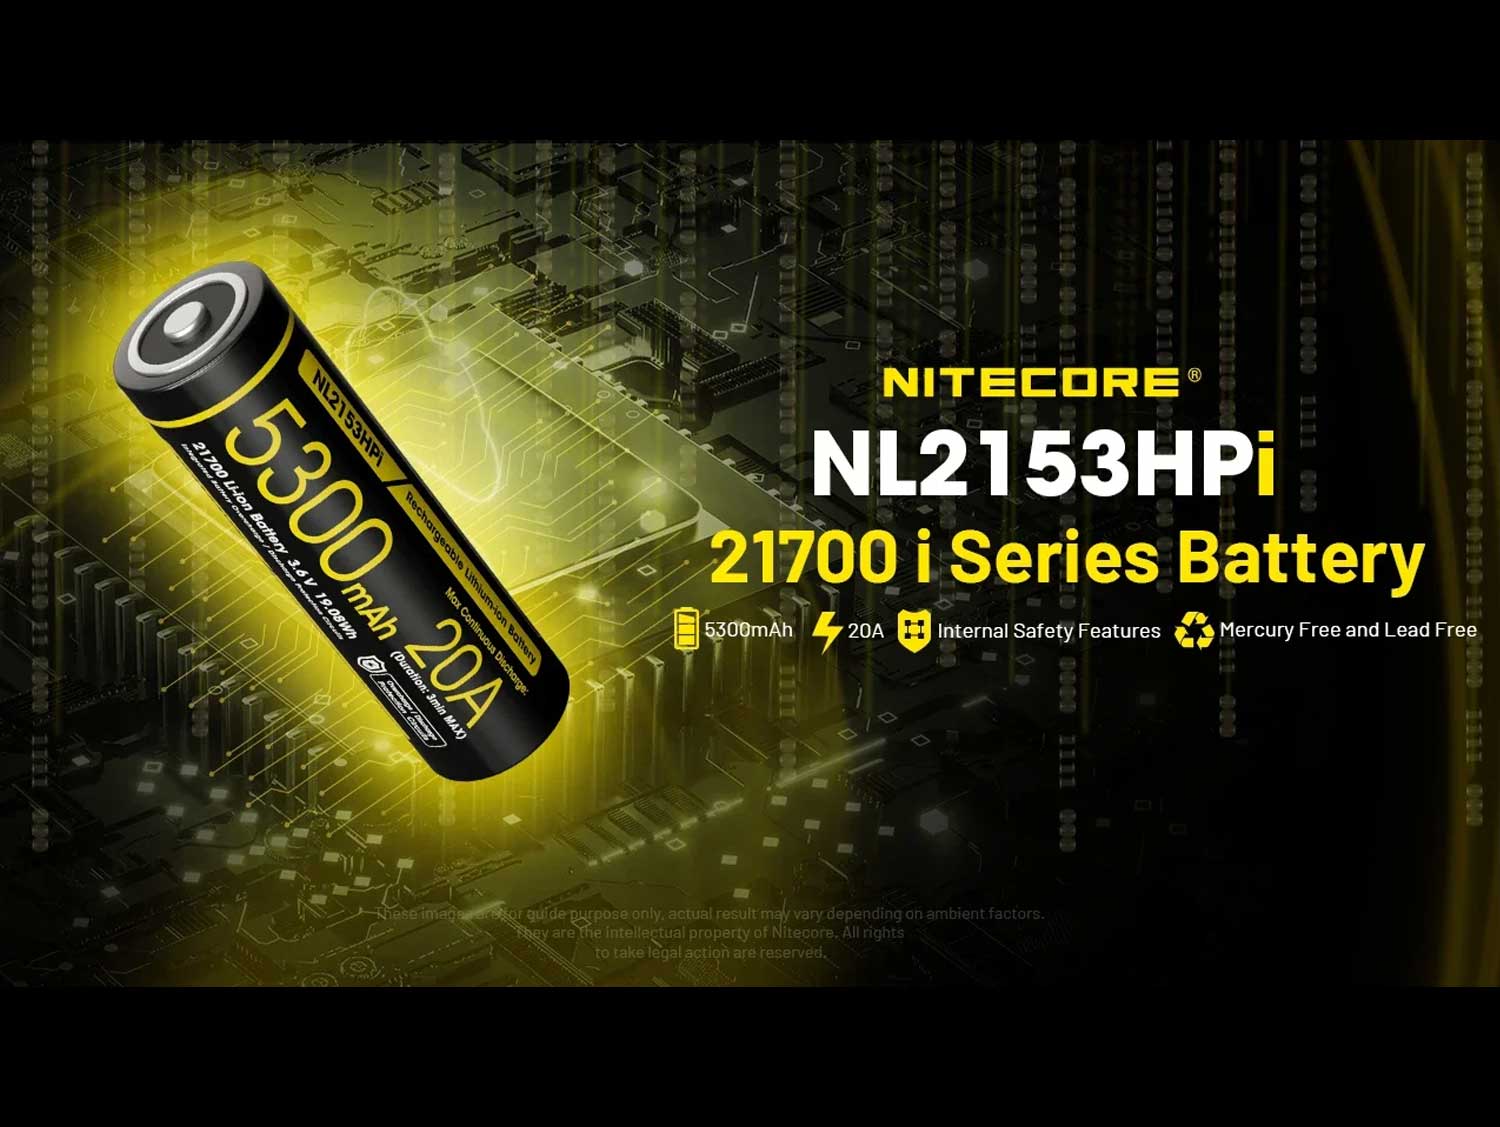 NITECORE 21700 Battery 5300mAh 20A 3.6V Li-ion Rechargeable Battery